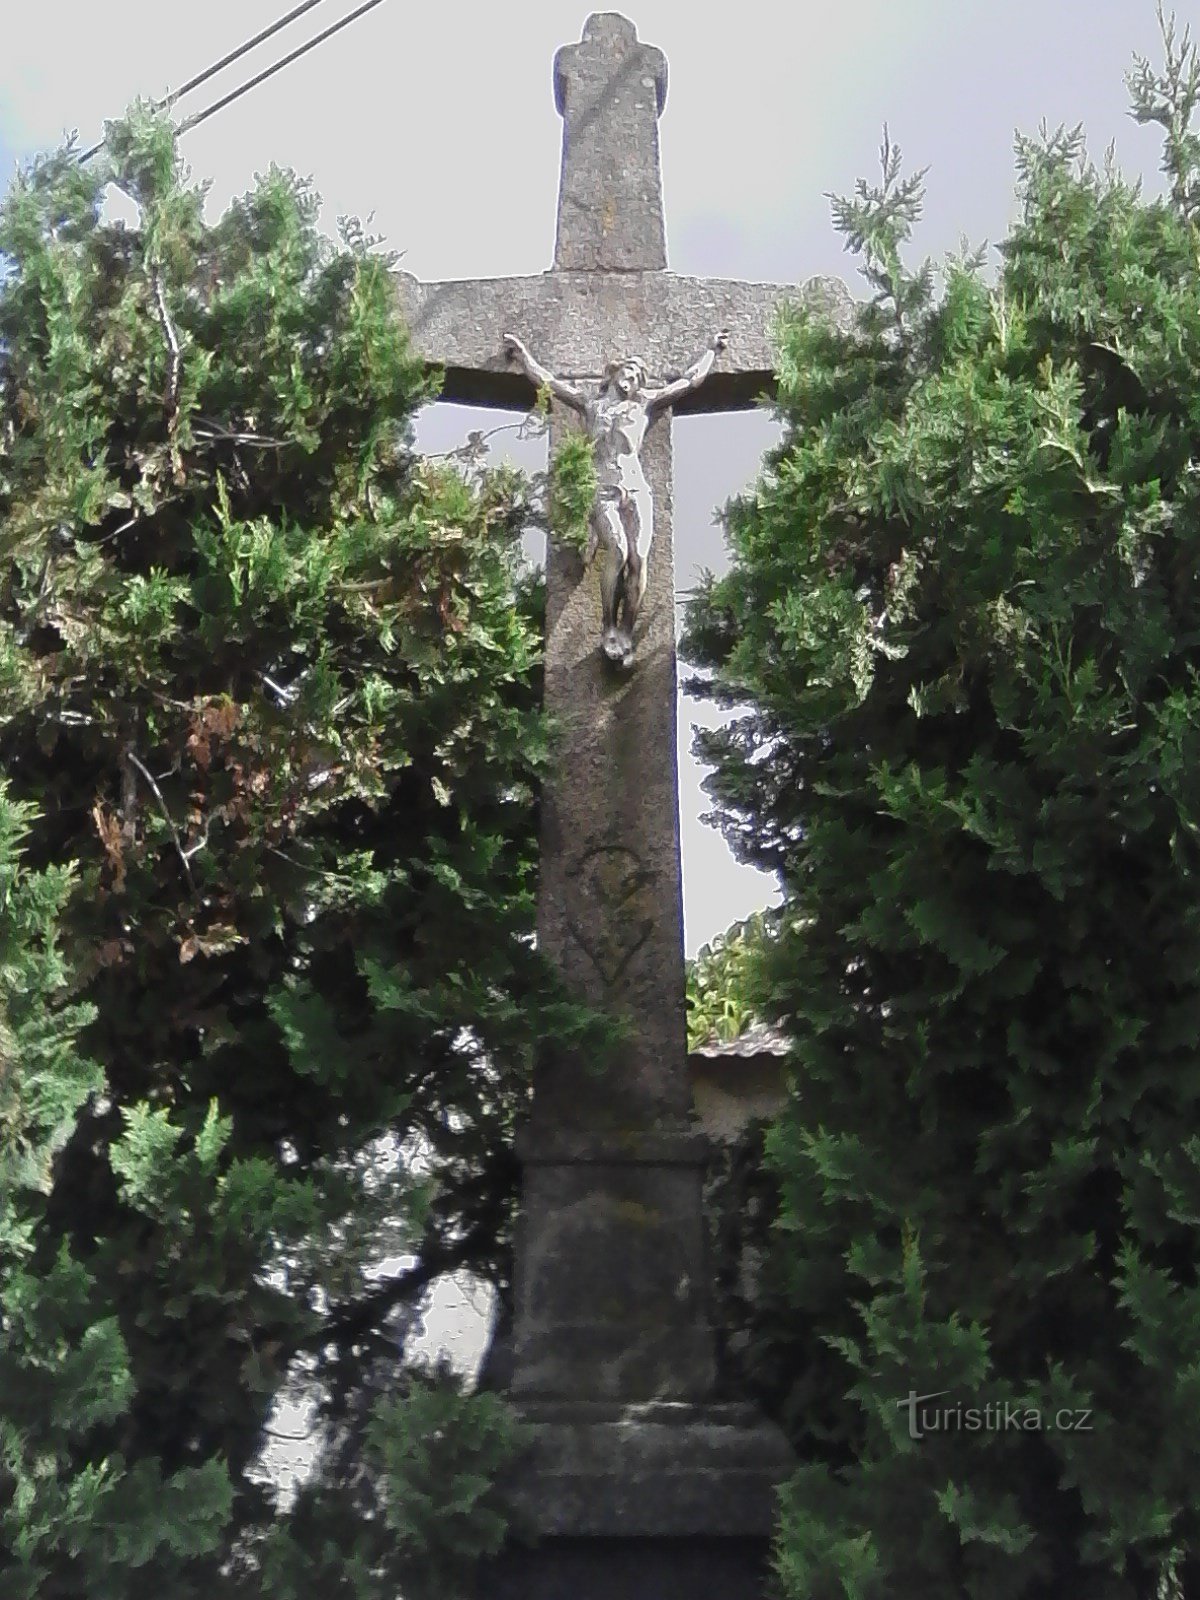 1. Uma cruz de pedra esculpida com um cálice de 1856 em Nechvalice.